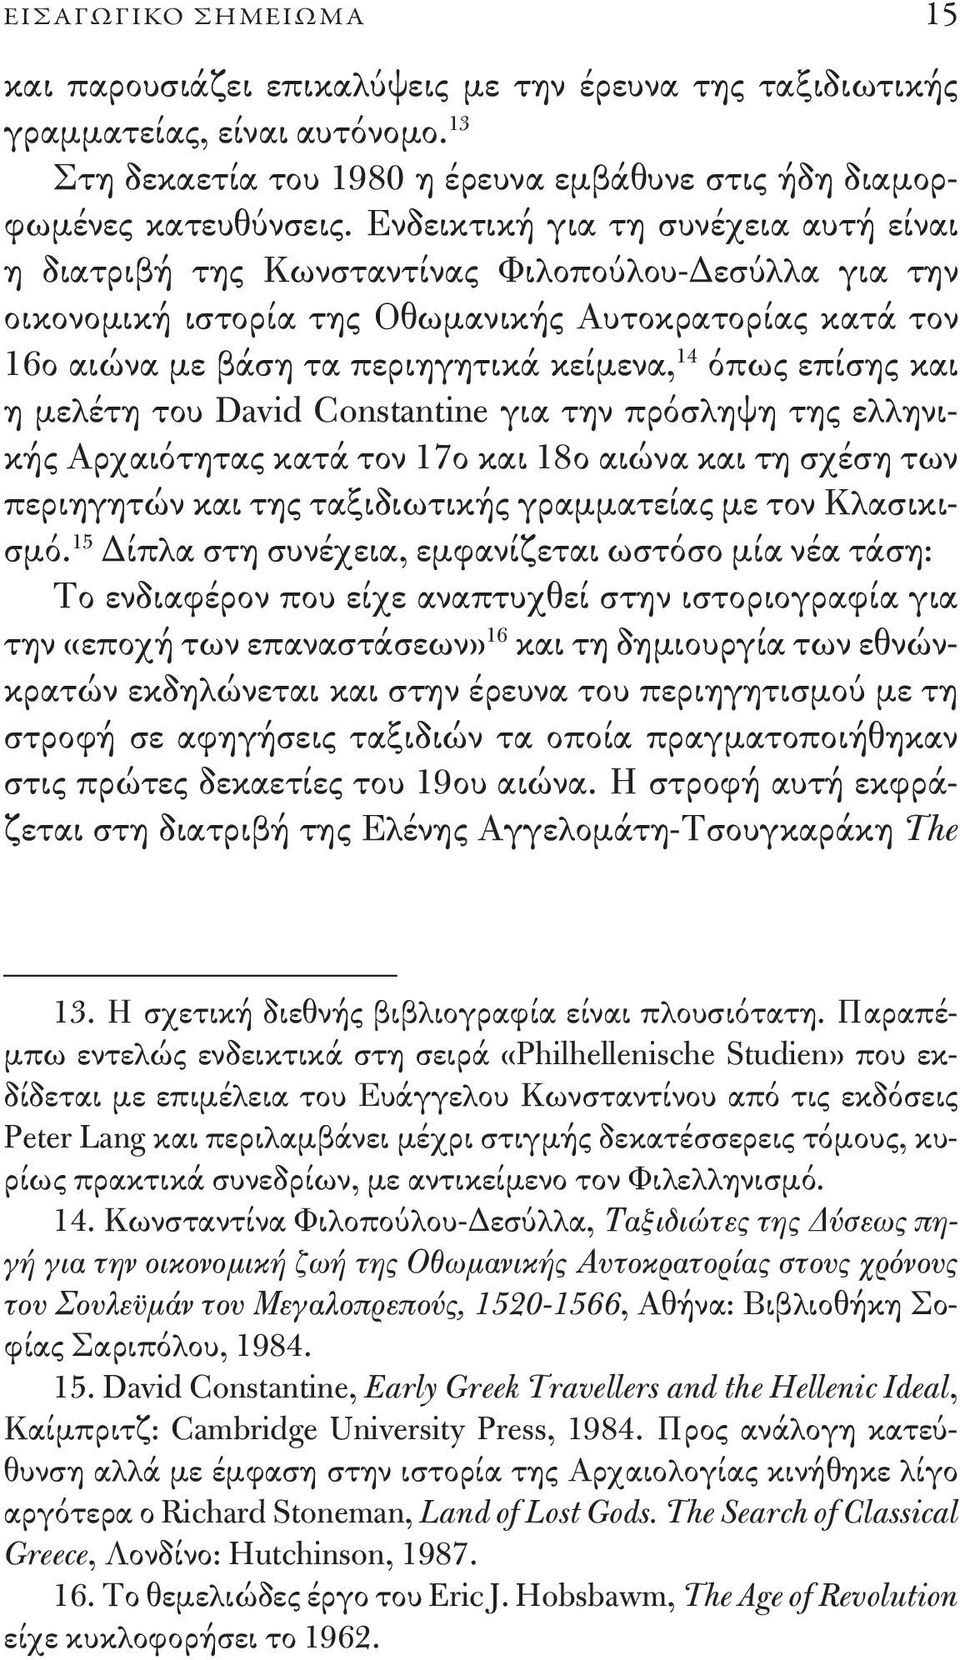 επίσης και η μελέτη του David Constantine για την πρόσληψη της ελληνικής Αρχαιότητας κατά τον 17ο και 18ο αιώνα και τη σχέση των περιηγητών και της ταξιδιωτικής γραμματείας με τον Κλασικισμό.